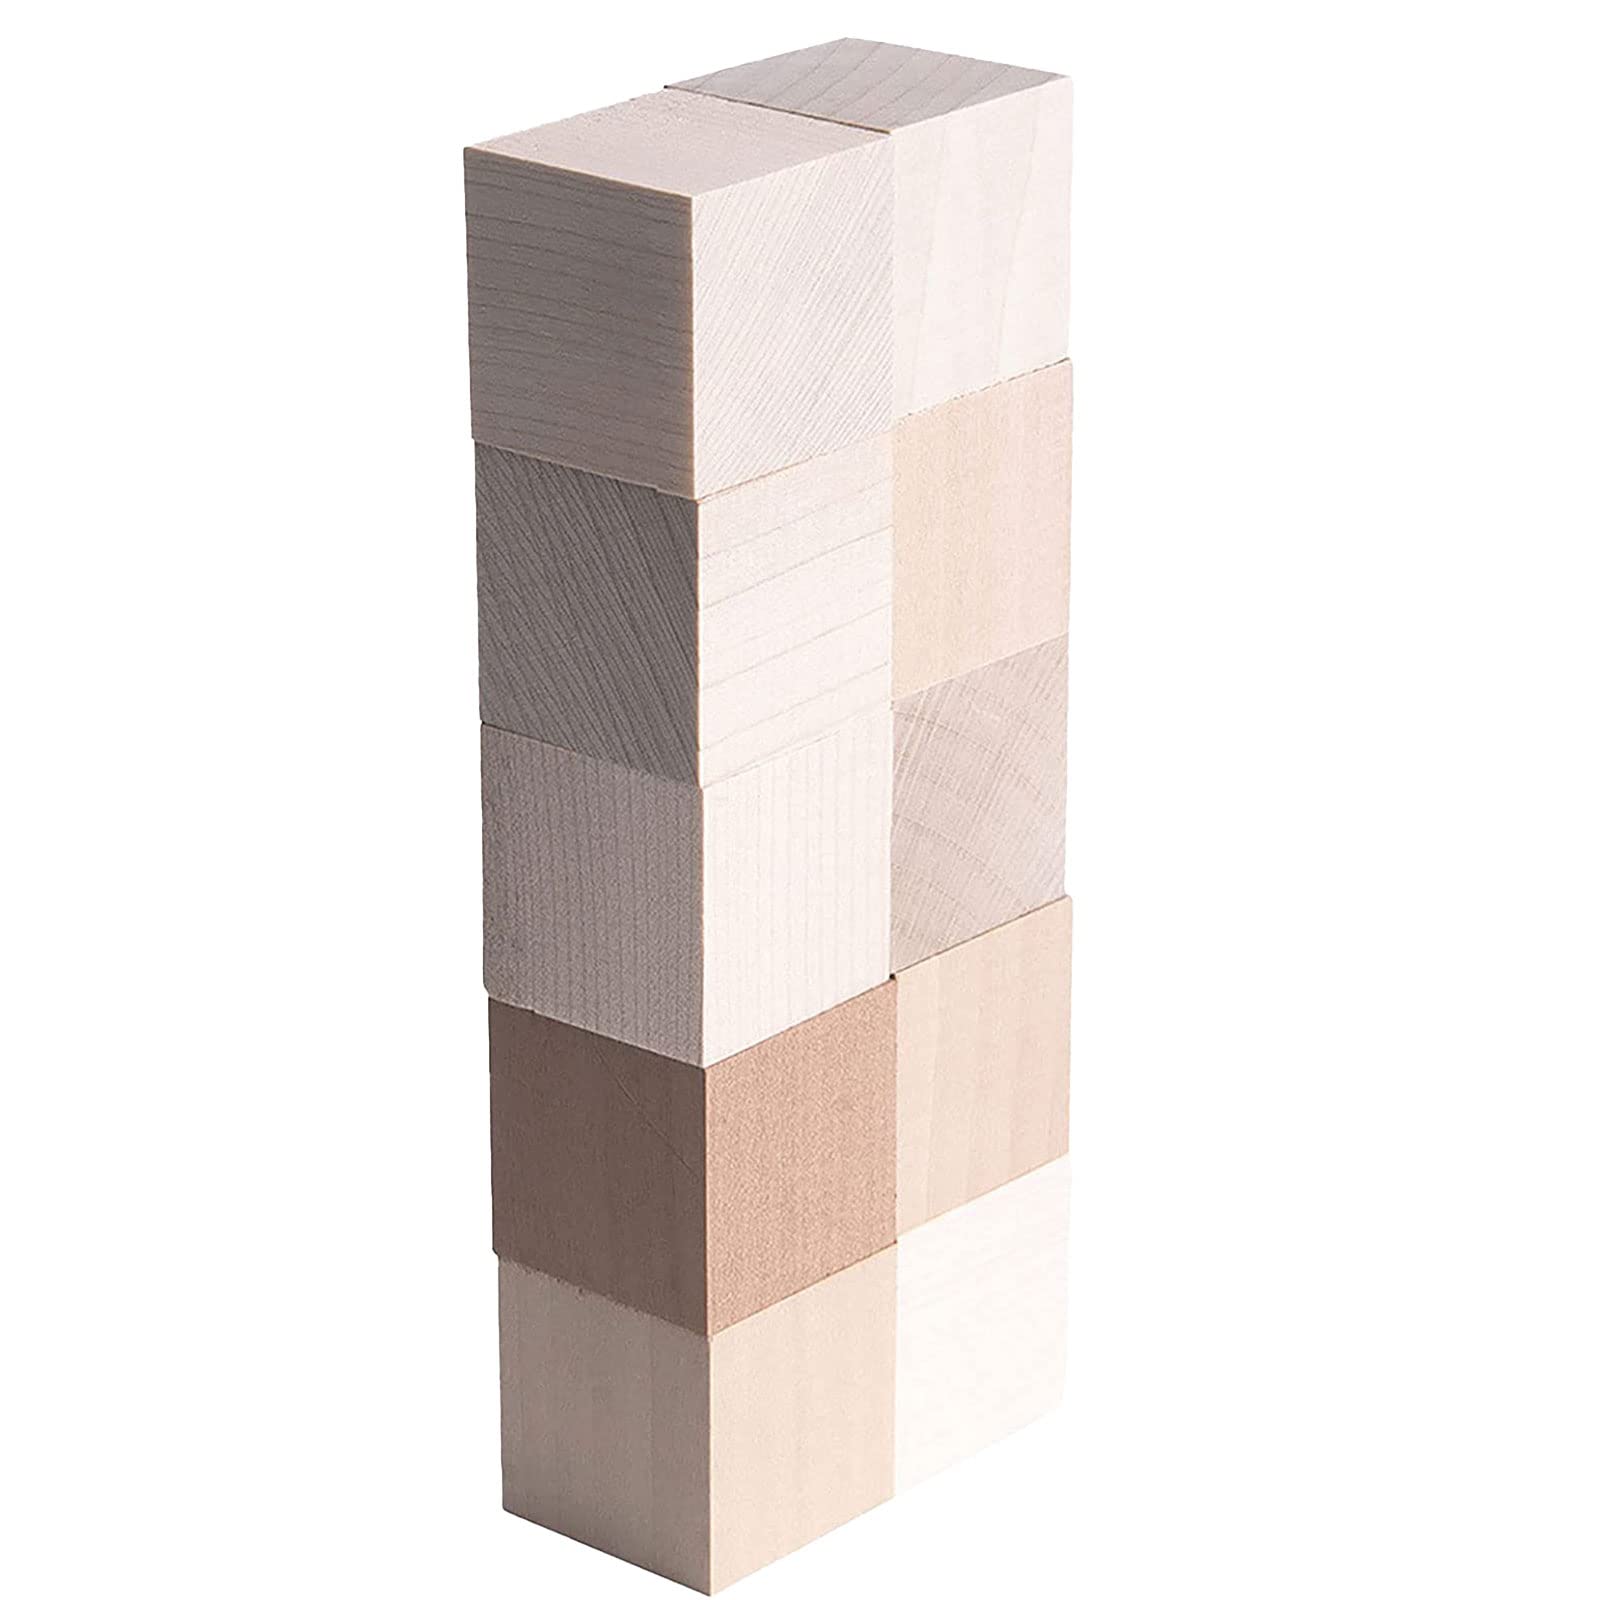 立方体積み木【10個セット】 収納袋付き ニキーチン積み木作りにも人気